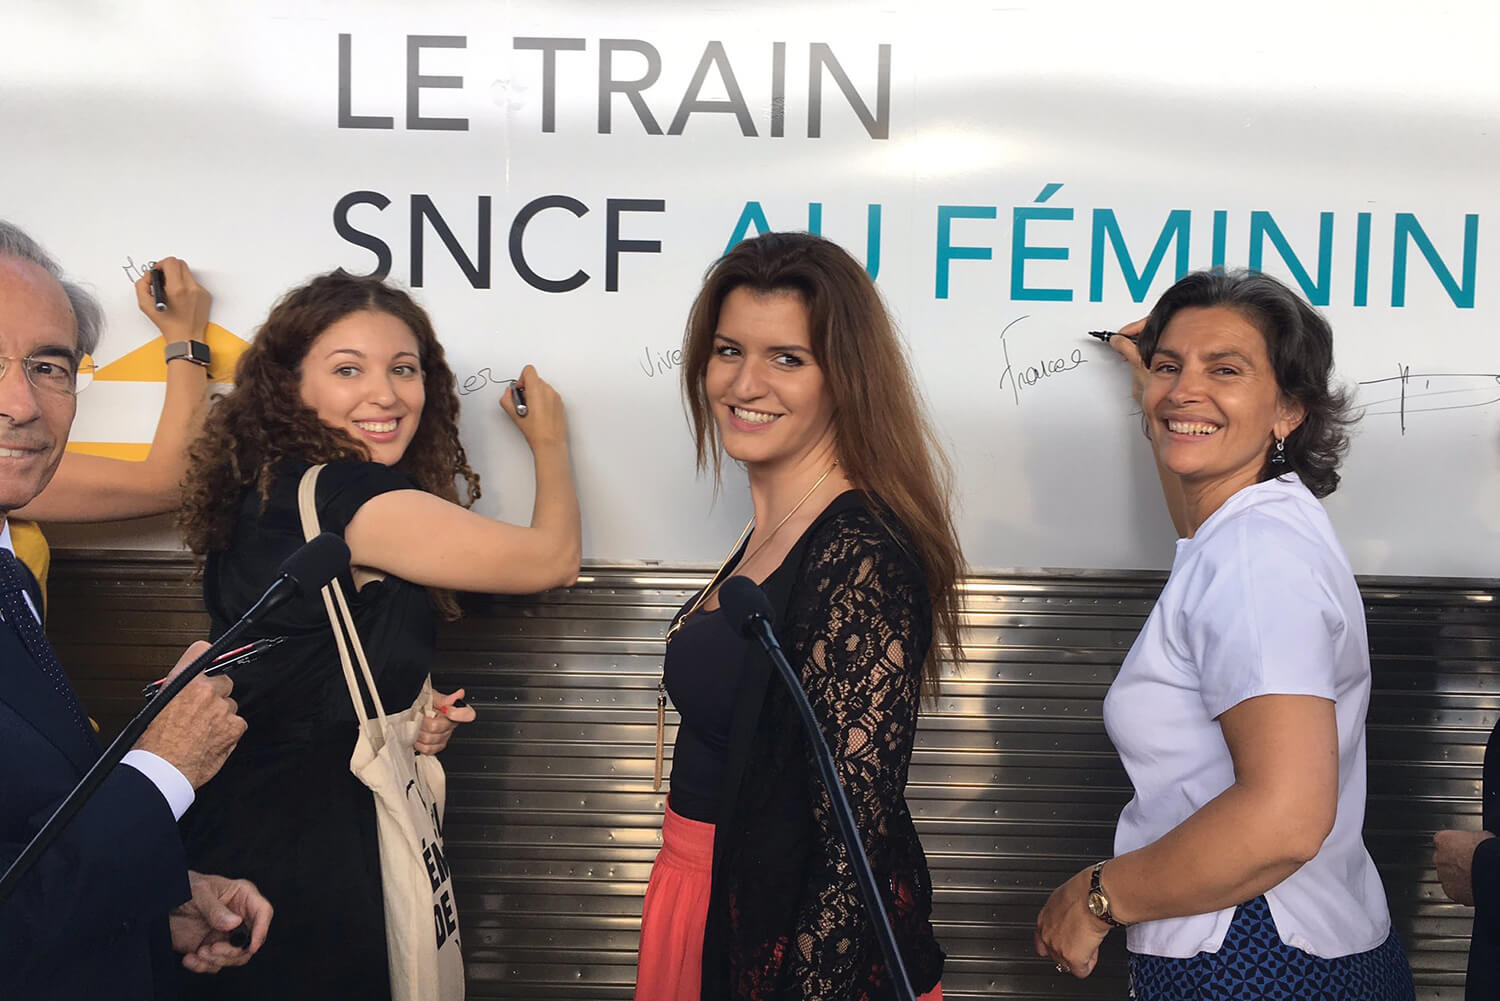 Clôture du tour de France du train SNCF au Féminin, gare de Paris Est, le 28 juin 2019, en présence de Marlène Schiappa, secrétaire d’État chargée de l’Égalité entre les femmes et les hommes et de la Lutte contre les discriminations